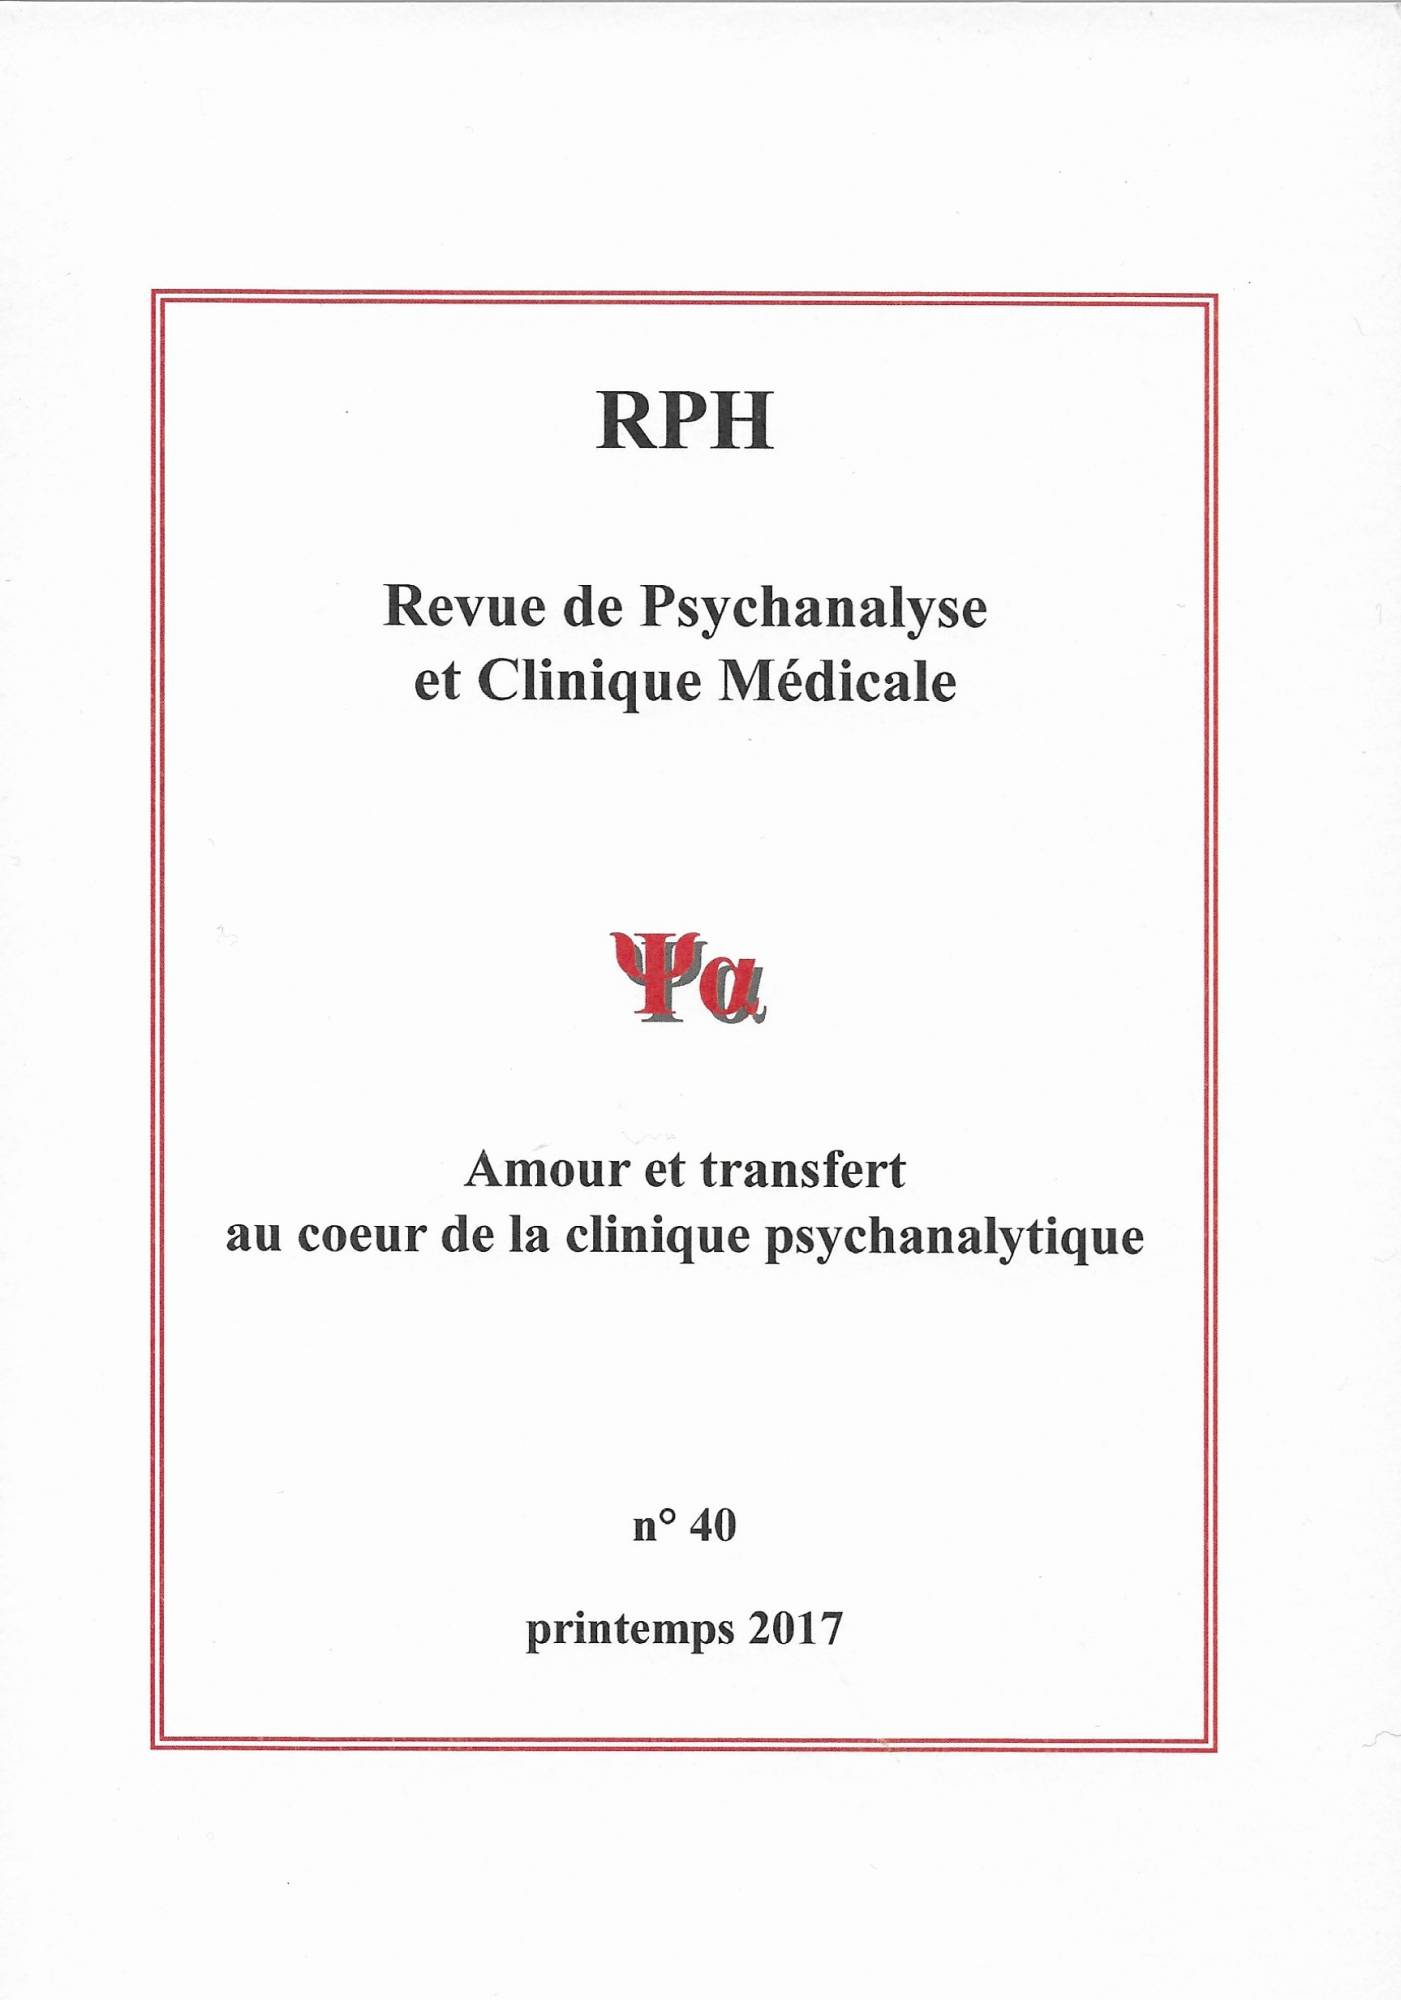 Consulter articles de psychanalyse à Paris 11è